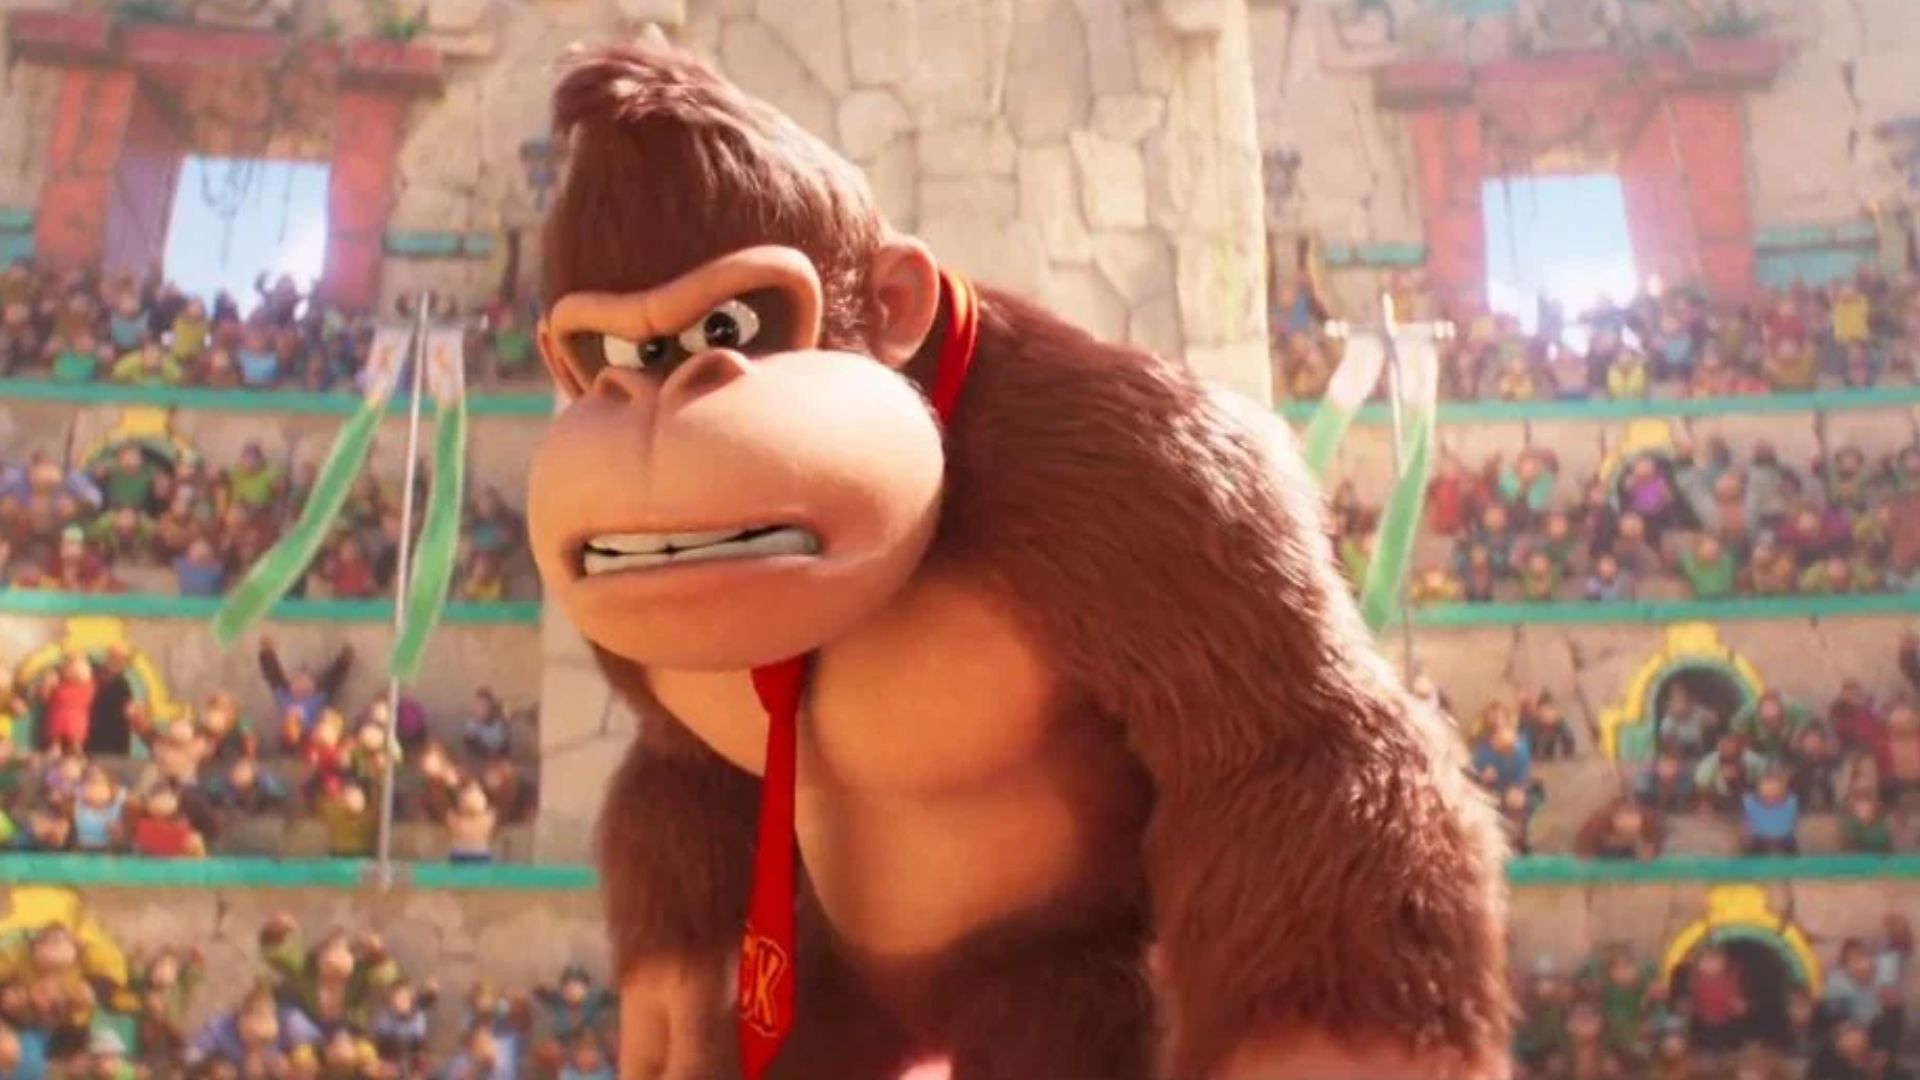 Depois de Mario, Nintendo pode produzir filme de Donkey Kong